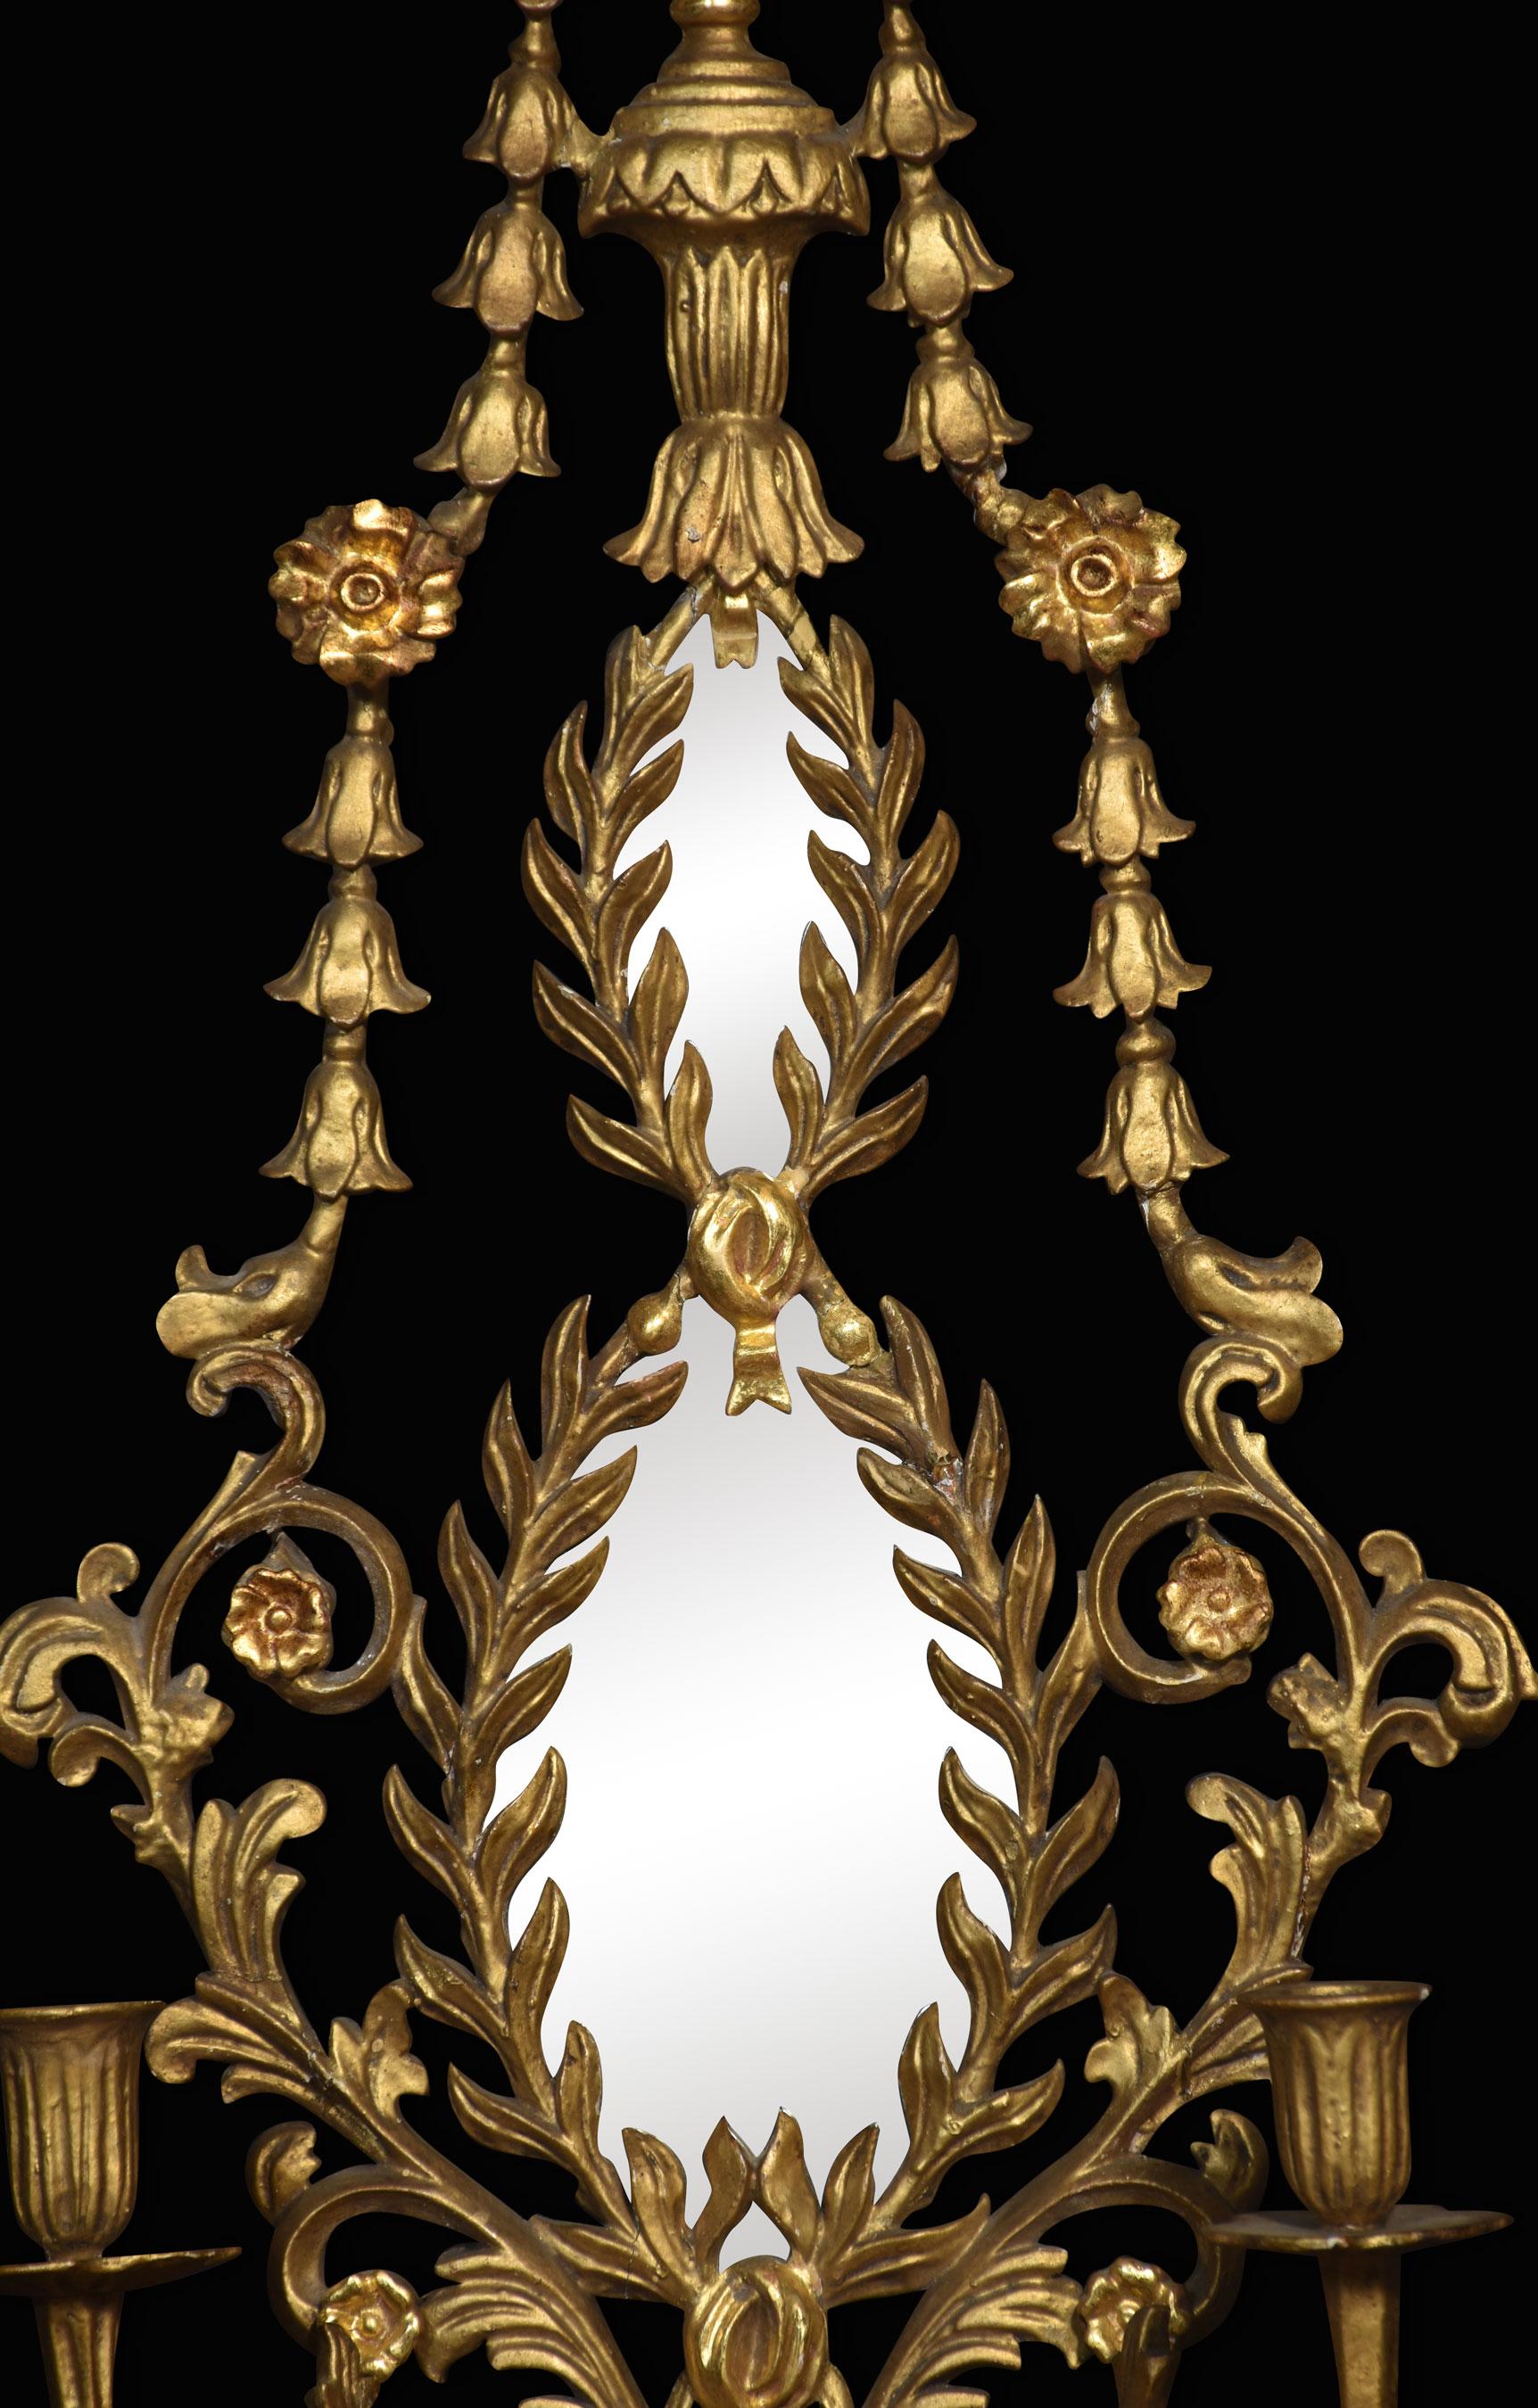 Zwei vergoldete Girandolen im neoklassizistischen Stil, jede mit Vasenaufsatz über zwei ovalen Spiegeln in Lorbeerkranzrahmen, flankiert von Glockenblumenschwänzen, mit zwei Branch-Kerzenleuchtern.
Abmessungen
Höhe 40,5 Zoll
Breite 15,5 Zoll
Tiefe